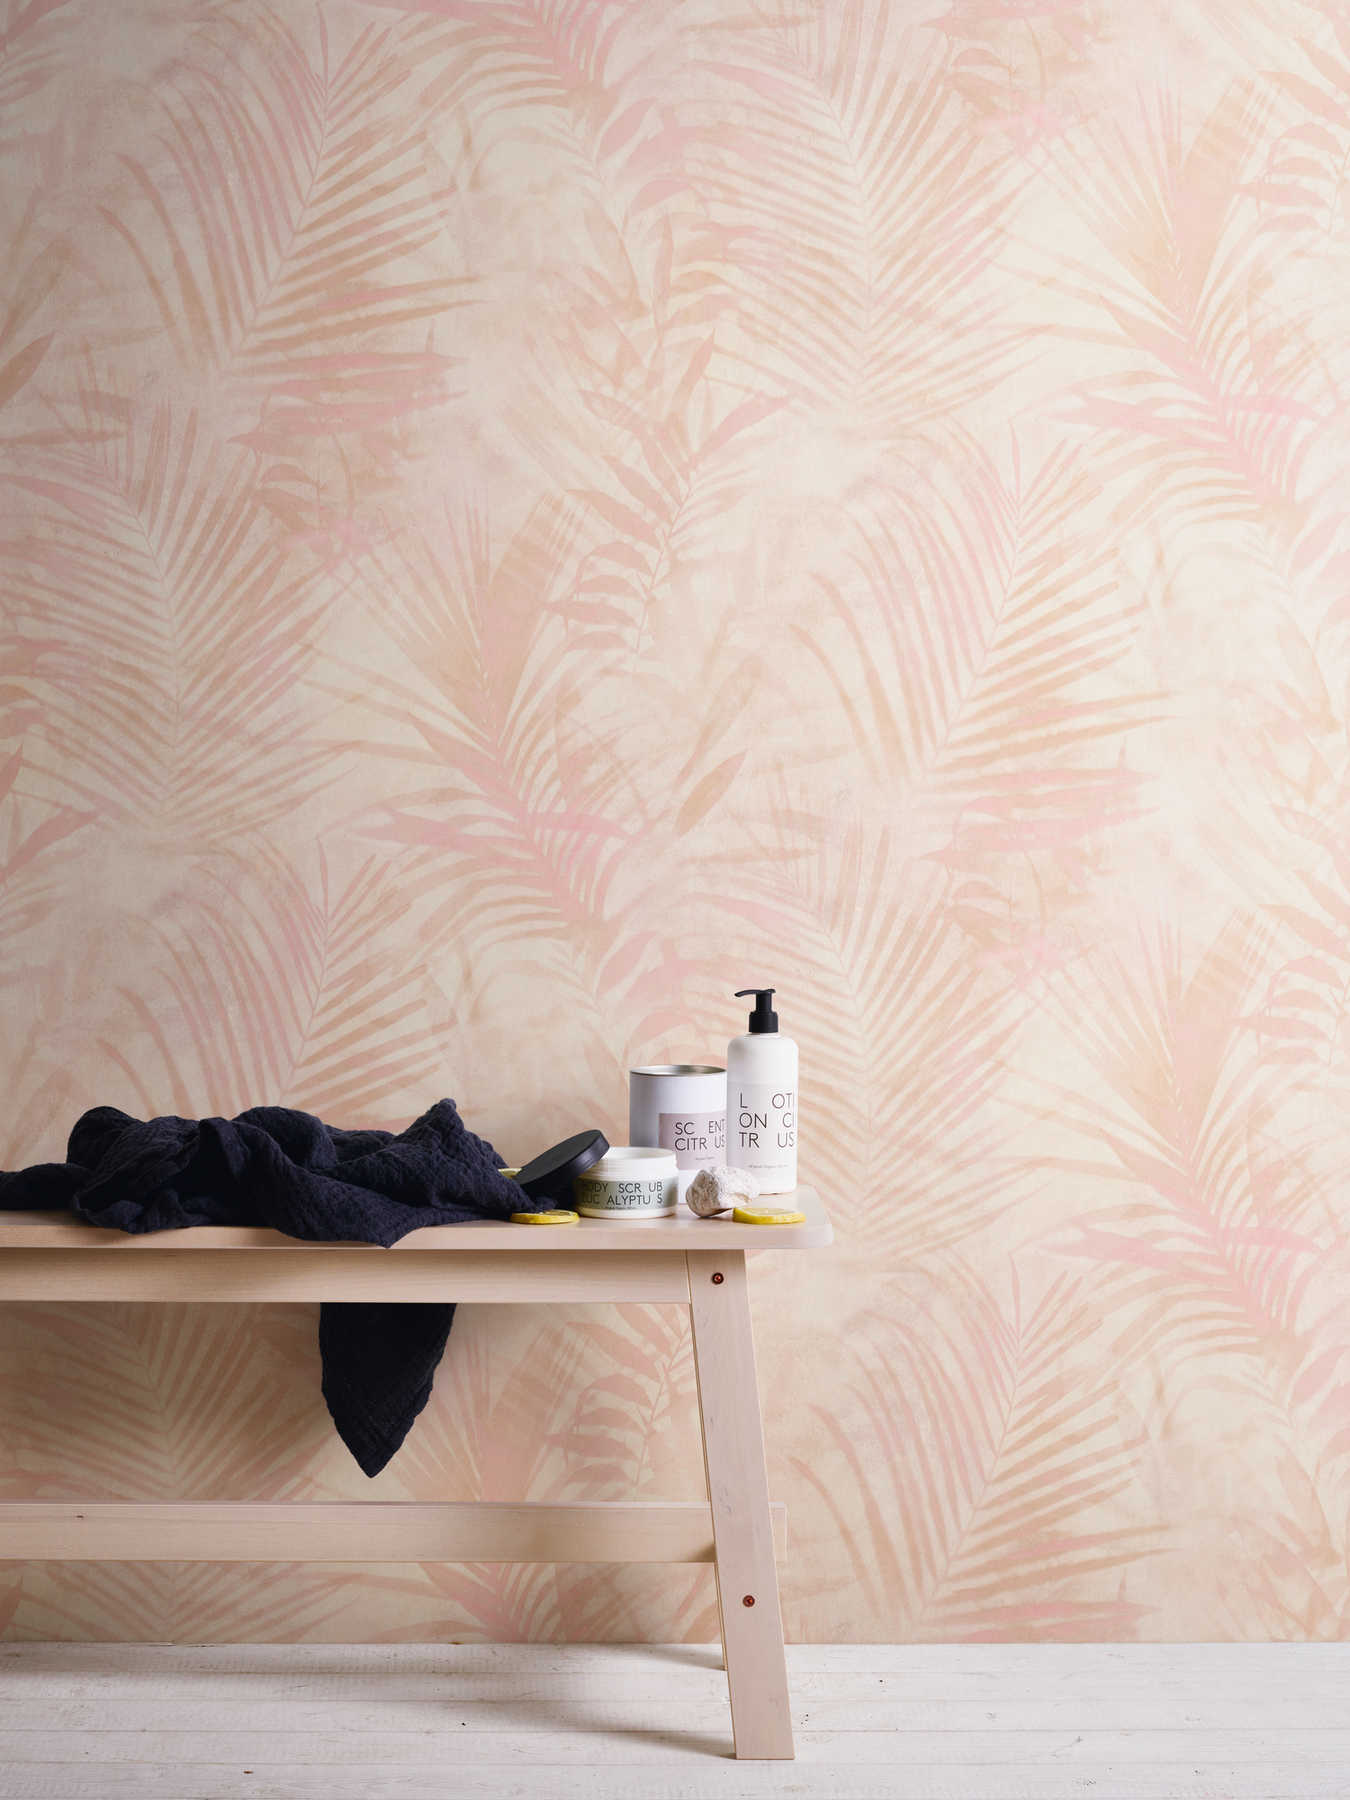             Wallpaper palm tree pattern in linen look - pink, beige, cream
        